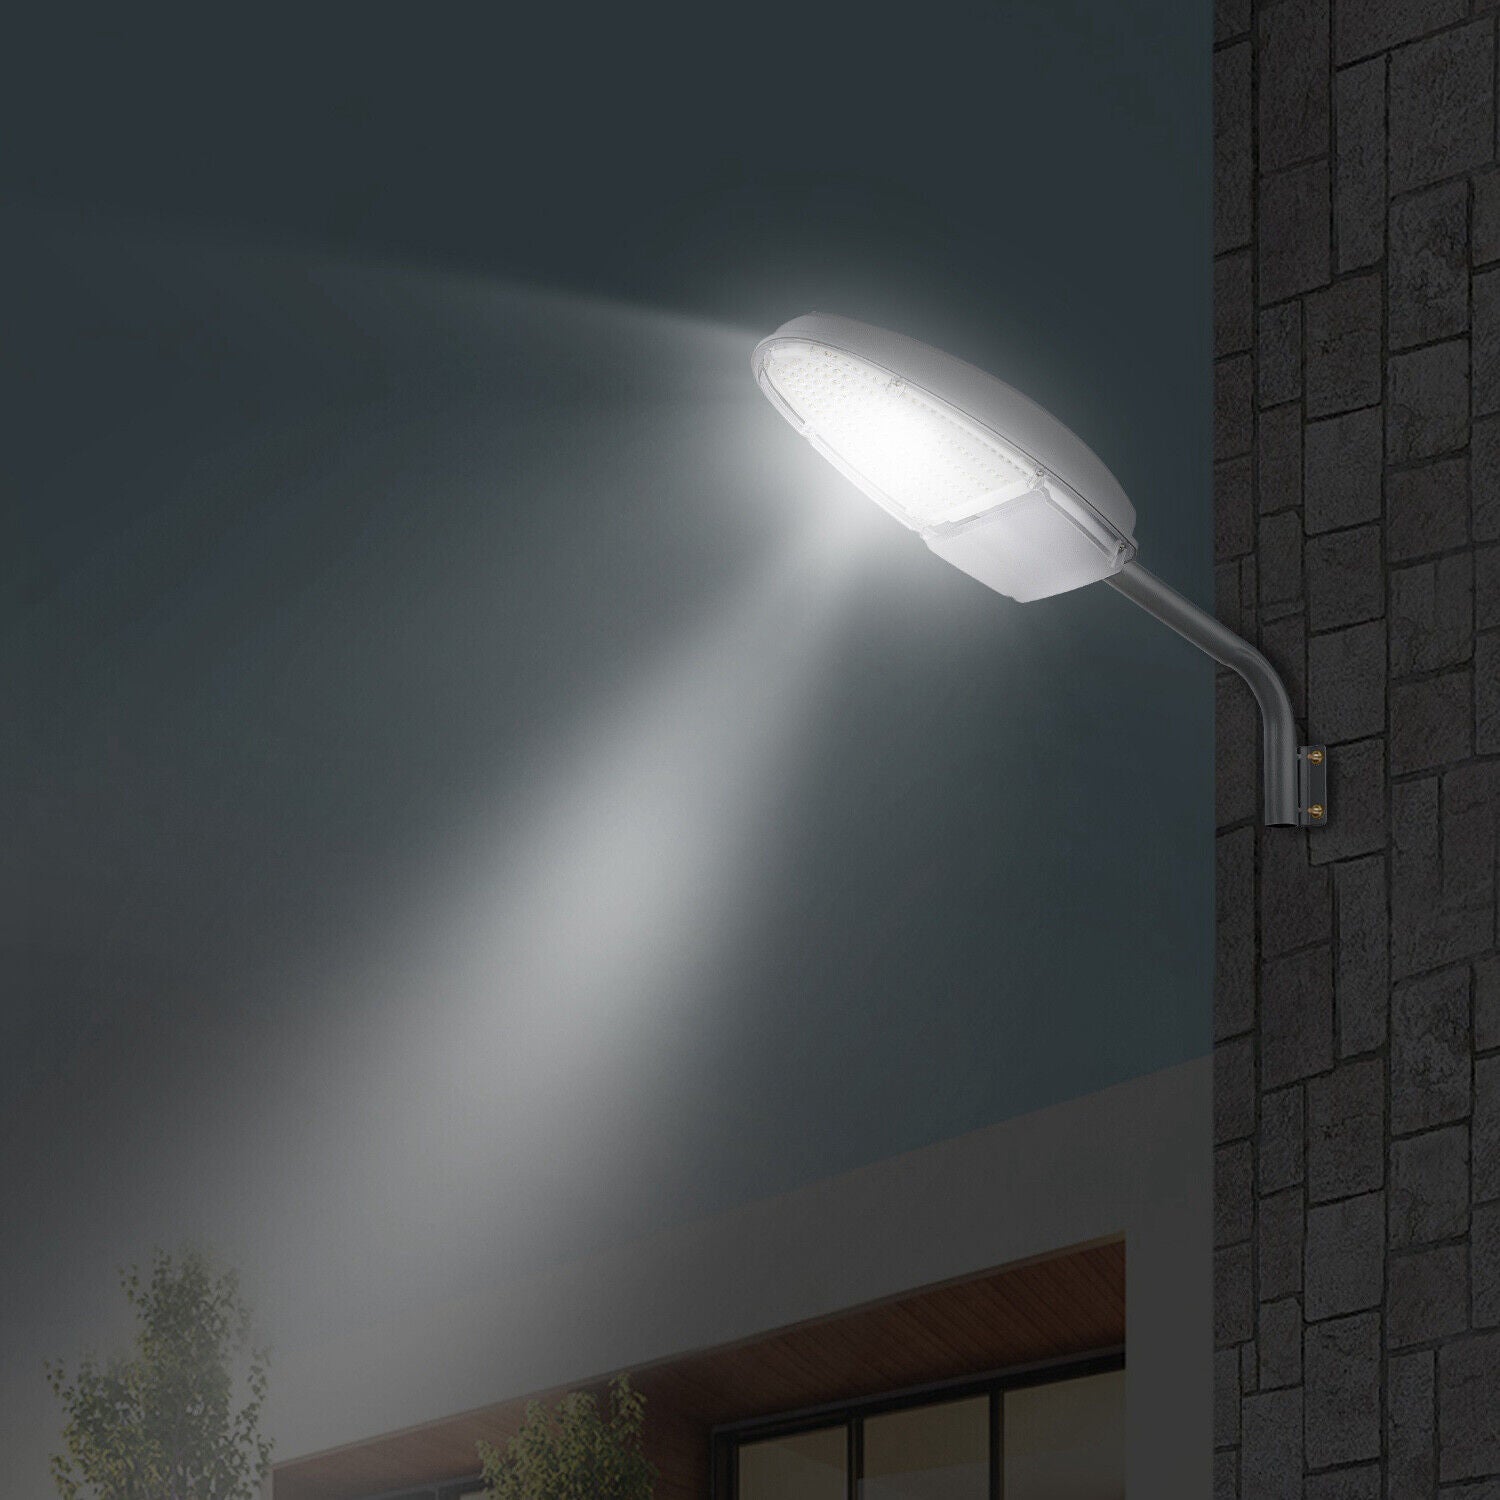 Street Lamp - 144 LEDs Wall Pack Led Light